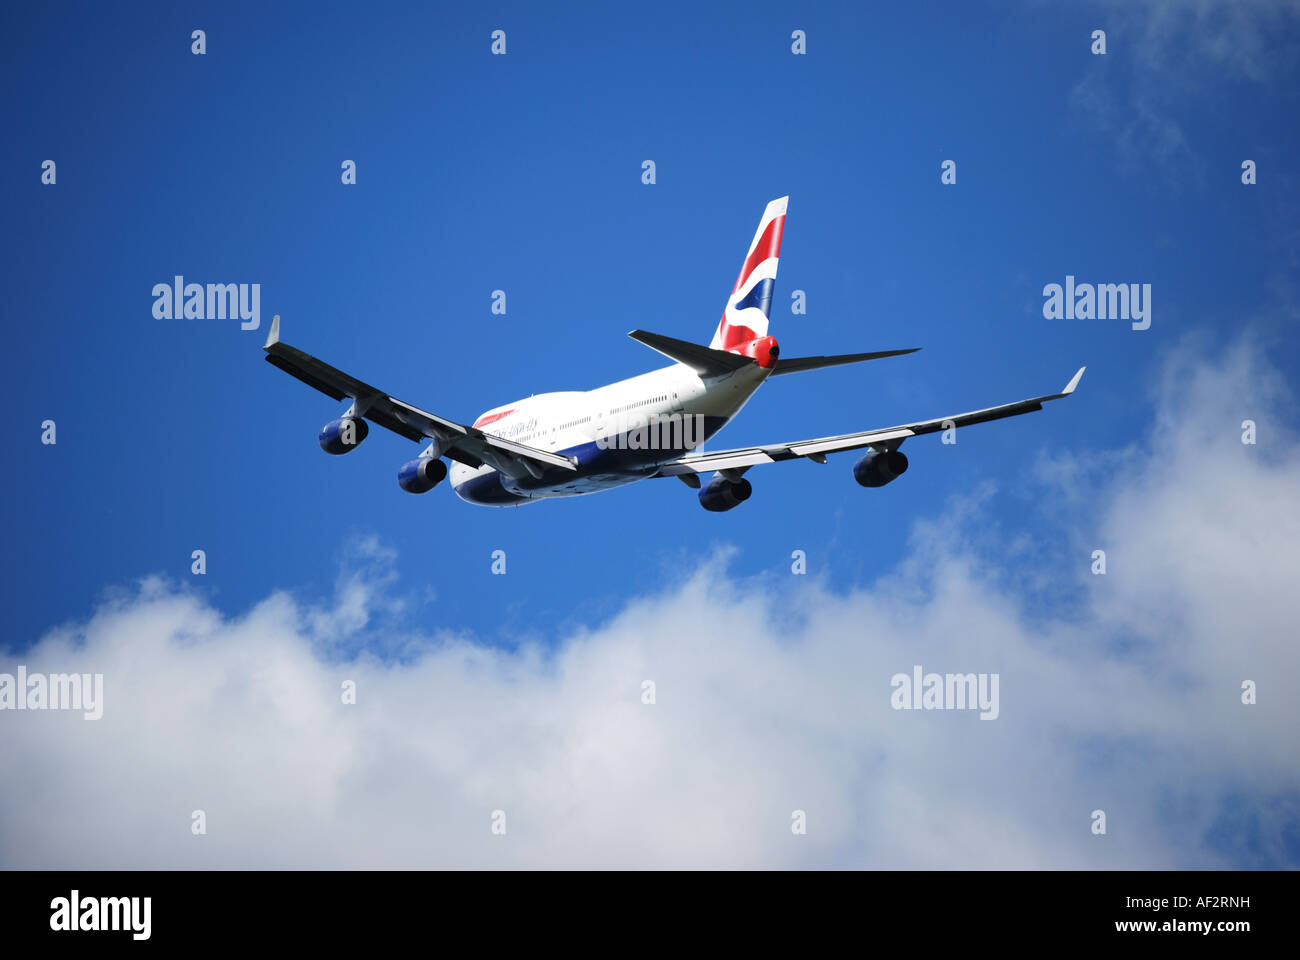 British Airways Boeing 747-400 aeromobili in fase di decollo dall'aeroporto di Heathrow, Middlesex, England, Regno Unito Foto Stock